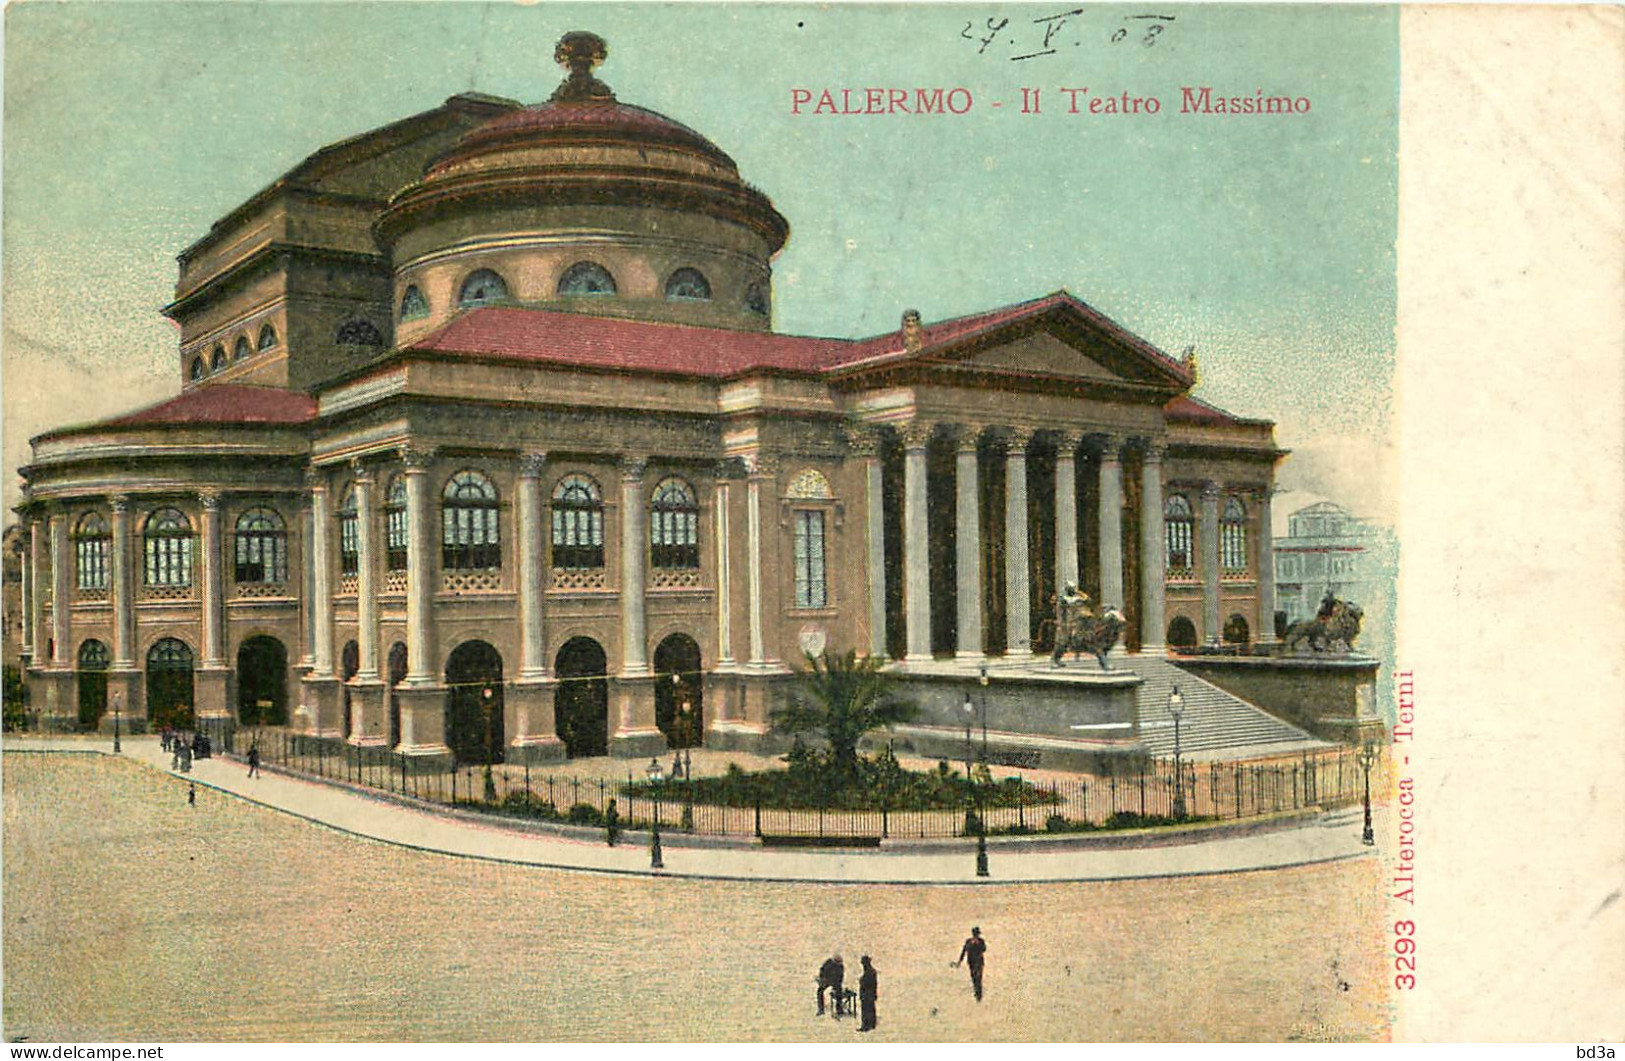  ITALIE   PALERMO  Il Teatro Massimo - Palermo